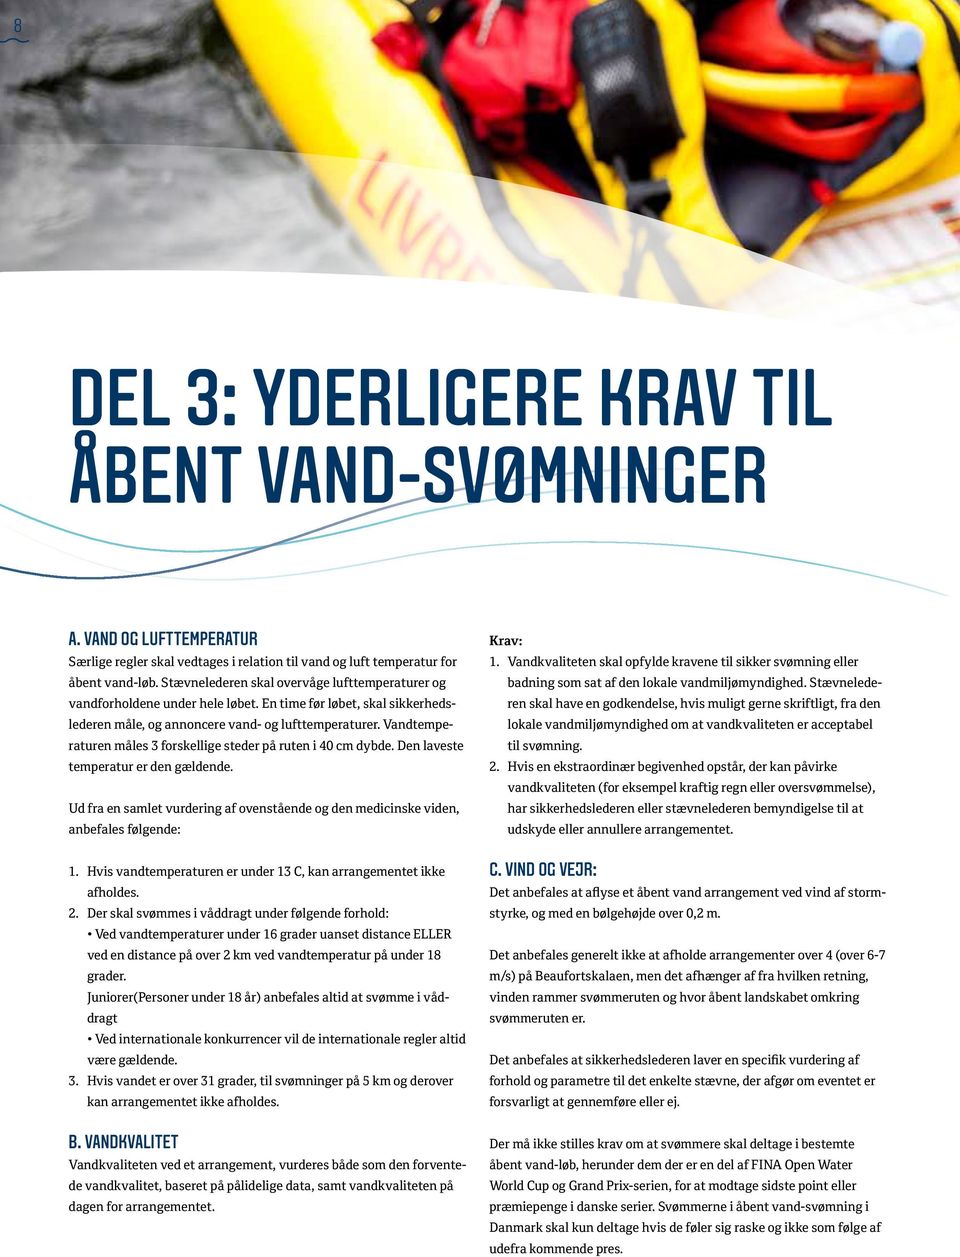 SIKKERHEDSPROTOKOL FOR ÅBENT VAND- ARRANGEMENTER I DANMARK V PDF Gratis  download